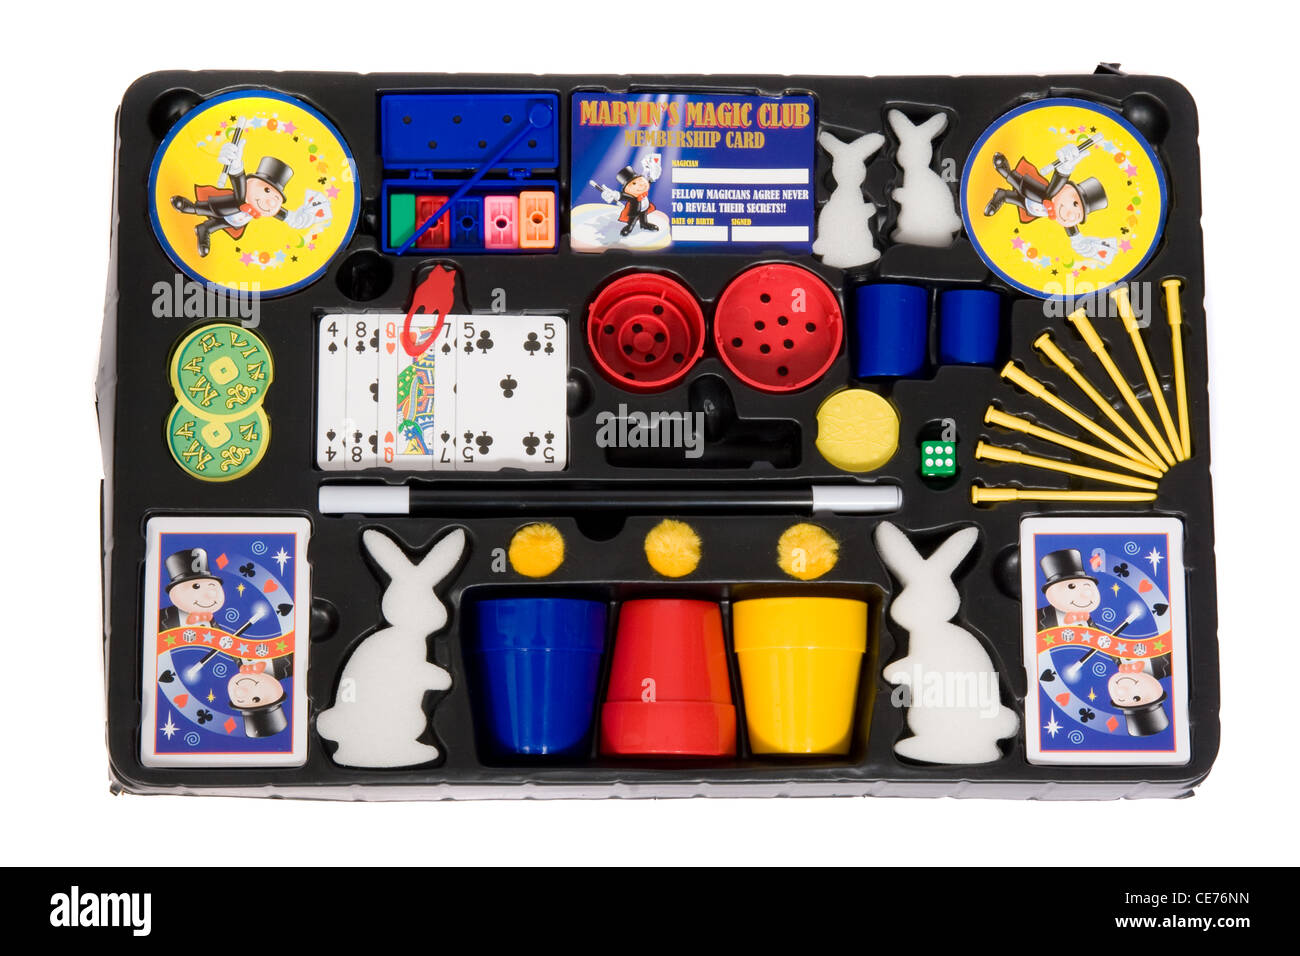 Marvin's Magic Box di trucchi. Un set di magia per i bambini. Foto Stock